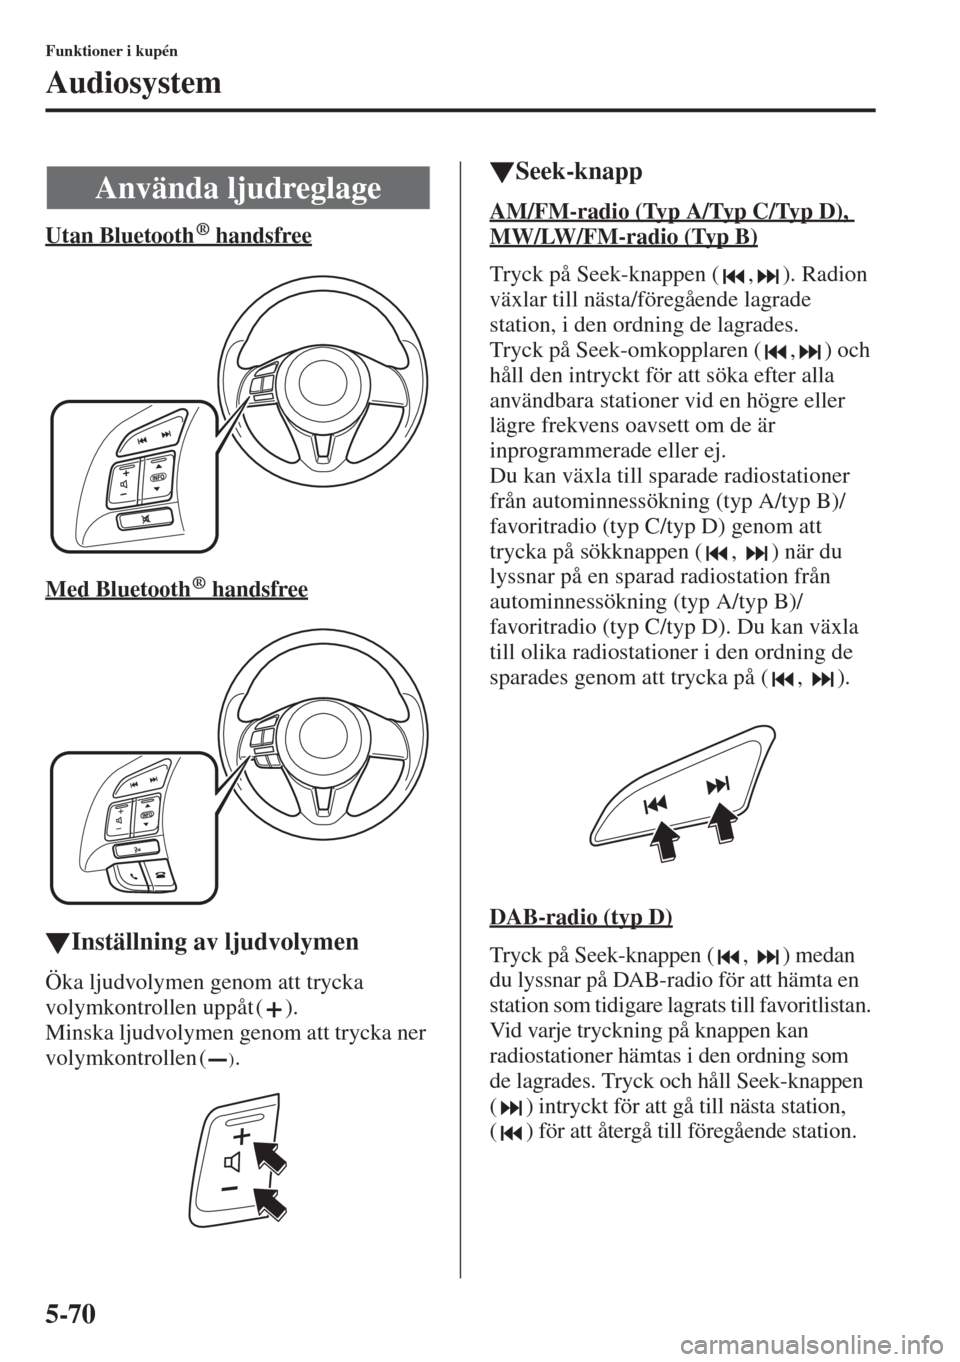 MAZDA MODEL 6 2015  Ägarmanual (in Swedish) 5-70
Funktioner i kupén
Audiosystem
Utan Bluetooth  handsfree
Med Bluetooth  handsfree
�WInställning av ljudvolymen
Öka ljudvolymen genom att trycka 
volymkontrollen uppåt ( ).
Minska ljudvolymen 